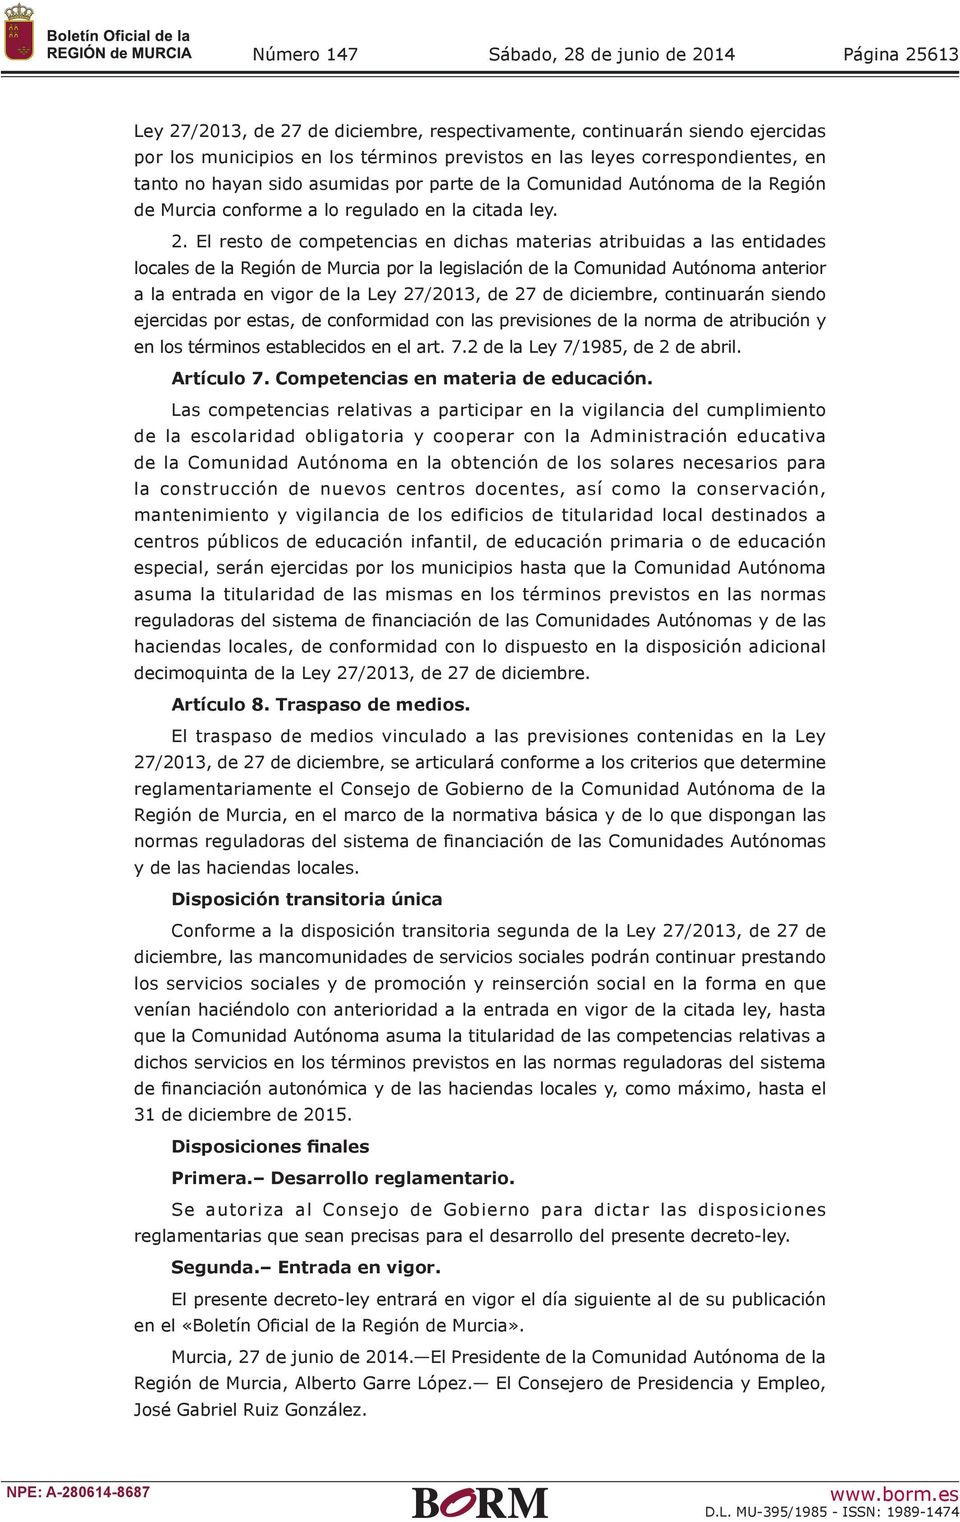 El resto de competencias en dichas materias atribuidas a las entidades locales de la Región de Murcia por la legislación de la Comunidad Autónoma anterior a la entrada en vigor de la Ley 27/2013, de